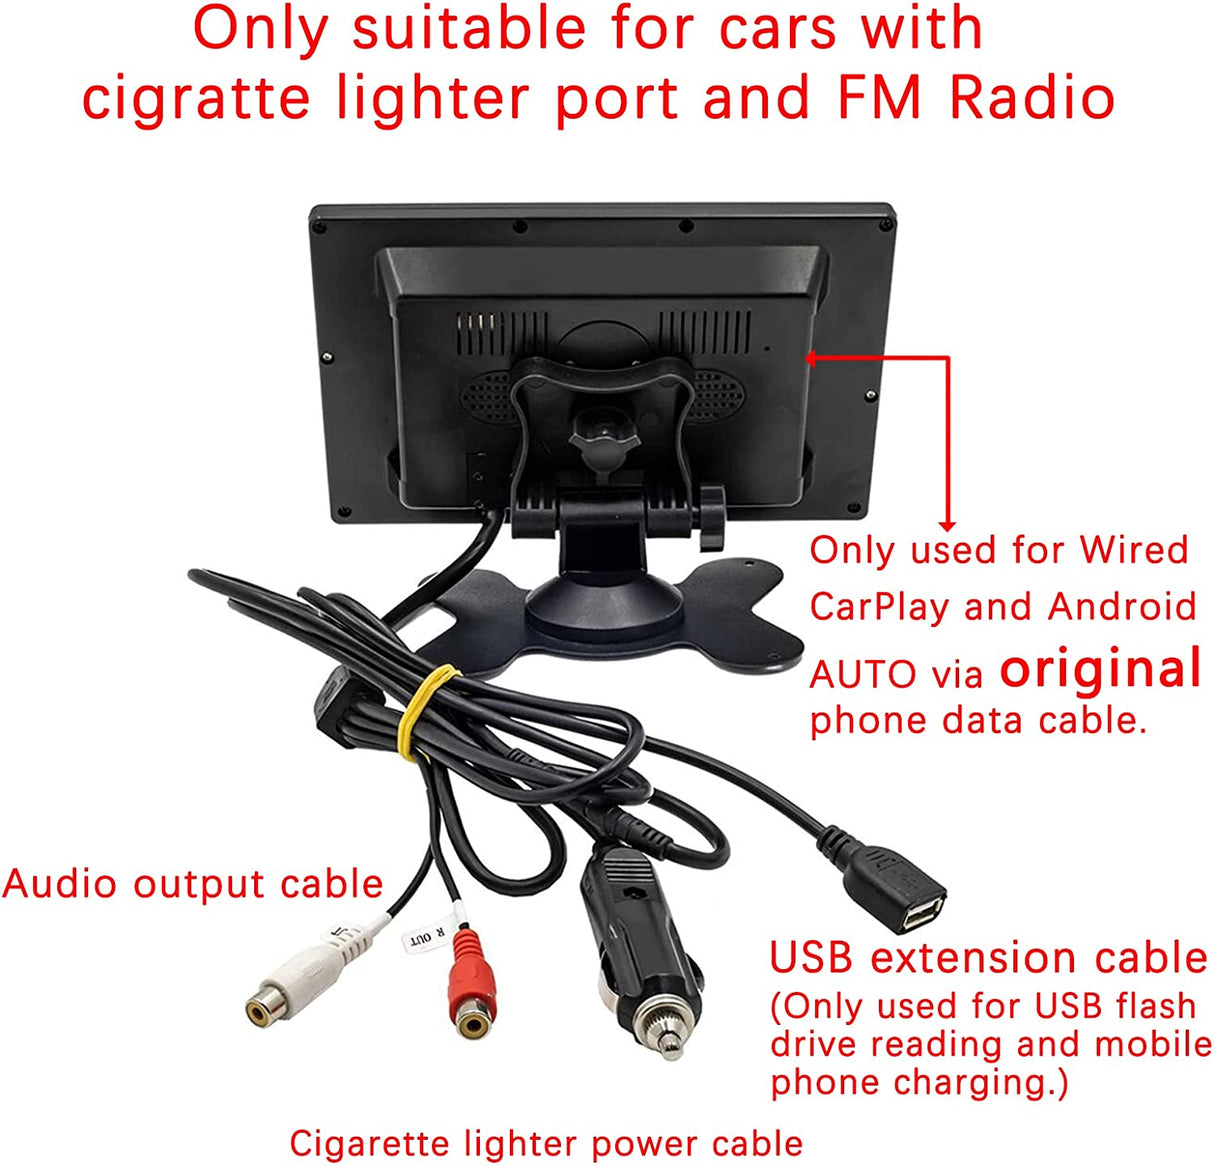 Binize reproductor MP5 portátil de 7 pulgadas compatible con CarPlay con transmisión FM